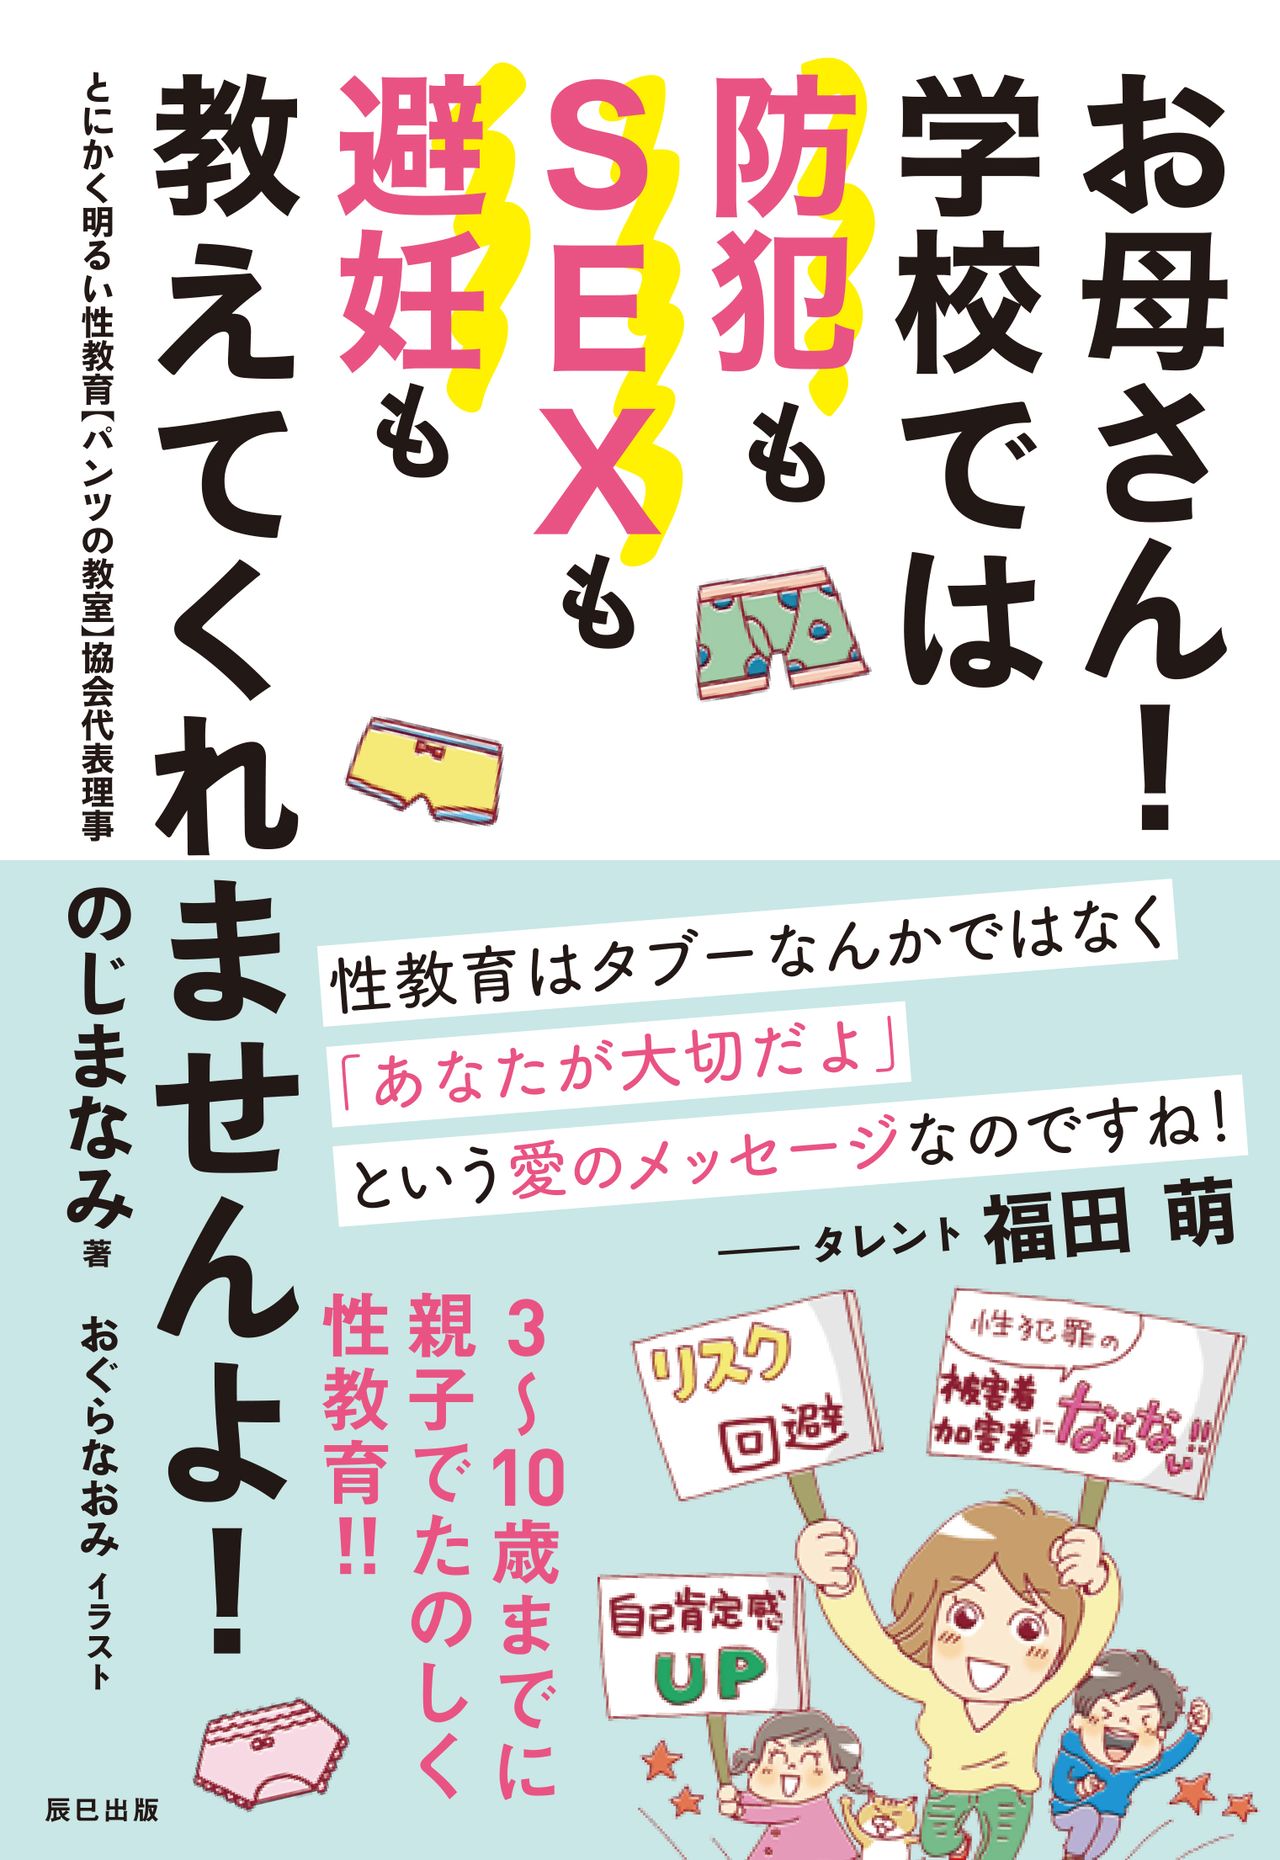 Le livre de Nojima Nami, « Okasan ! Gakkô de wa bôhan mo sex mo hinin mo oshiete kuremasen yo !» (Mamans ! Les écoles n'apprennent pas à vos enfants le sexe, la contraception ou comment rester en sécurité !) est un guide destiné aux parents qui souhaitent offrir à leurs enfants une éducation sexuelle que les écoles japonaises ne font pas. 